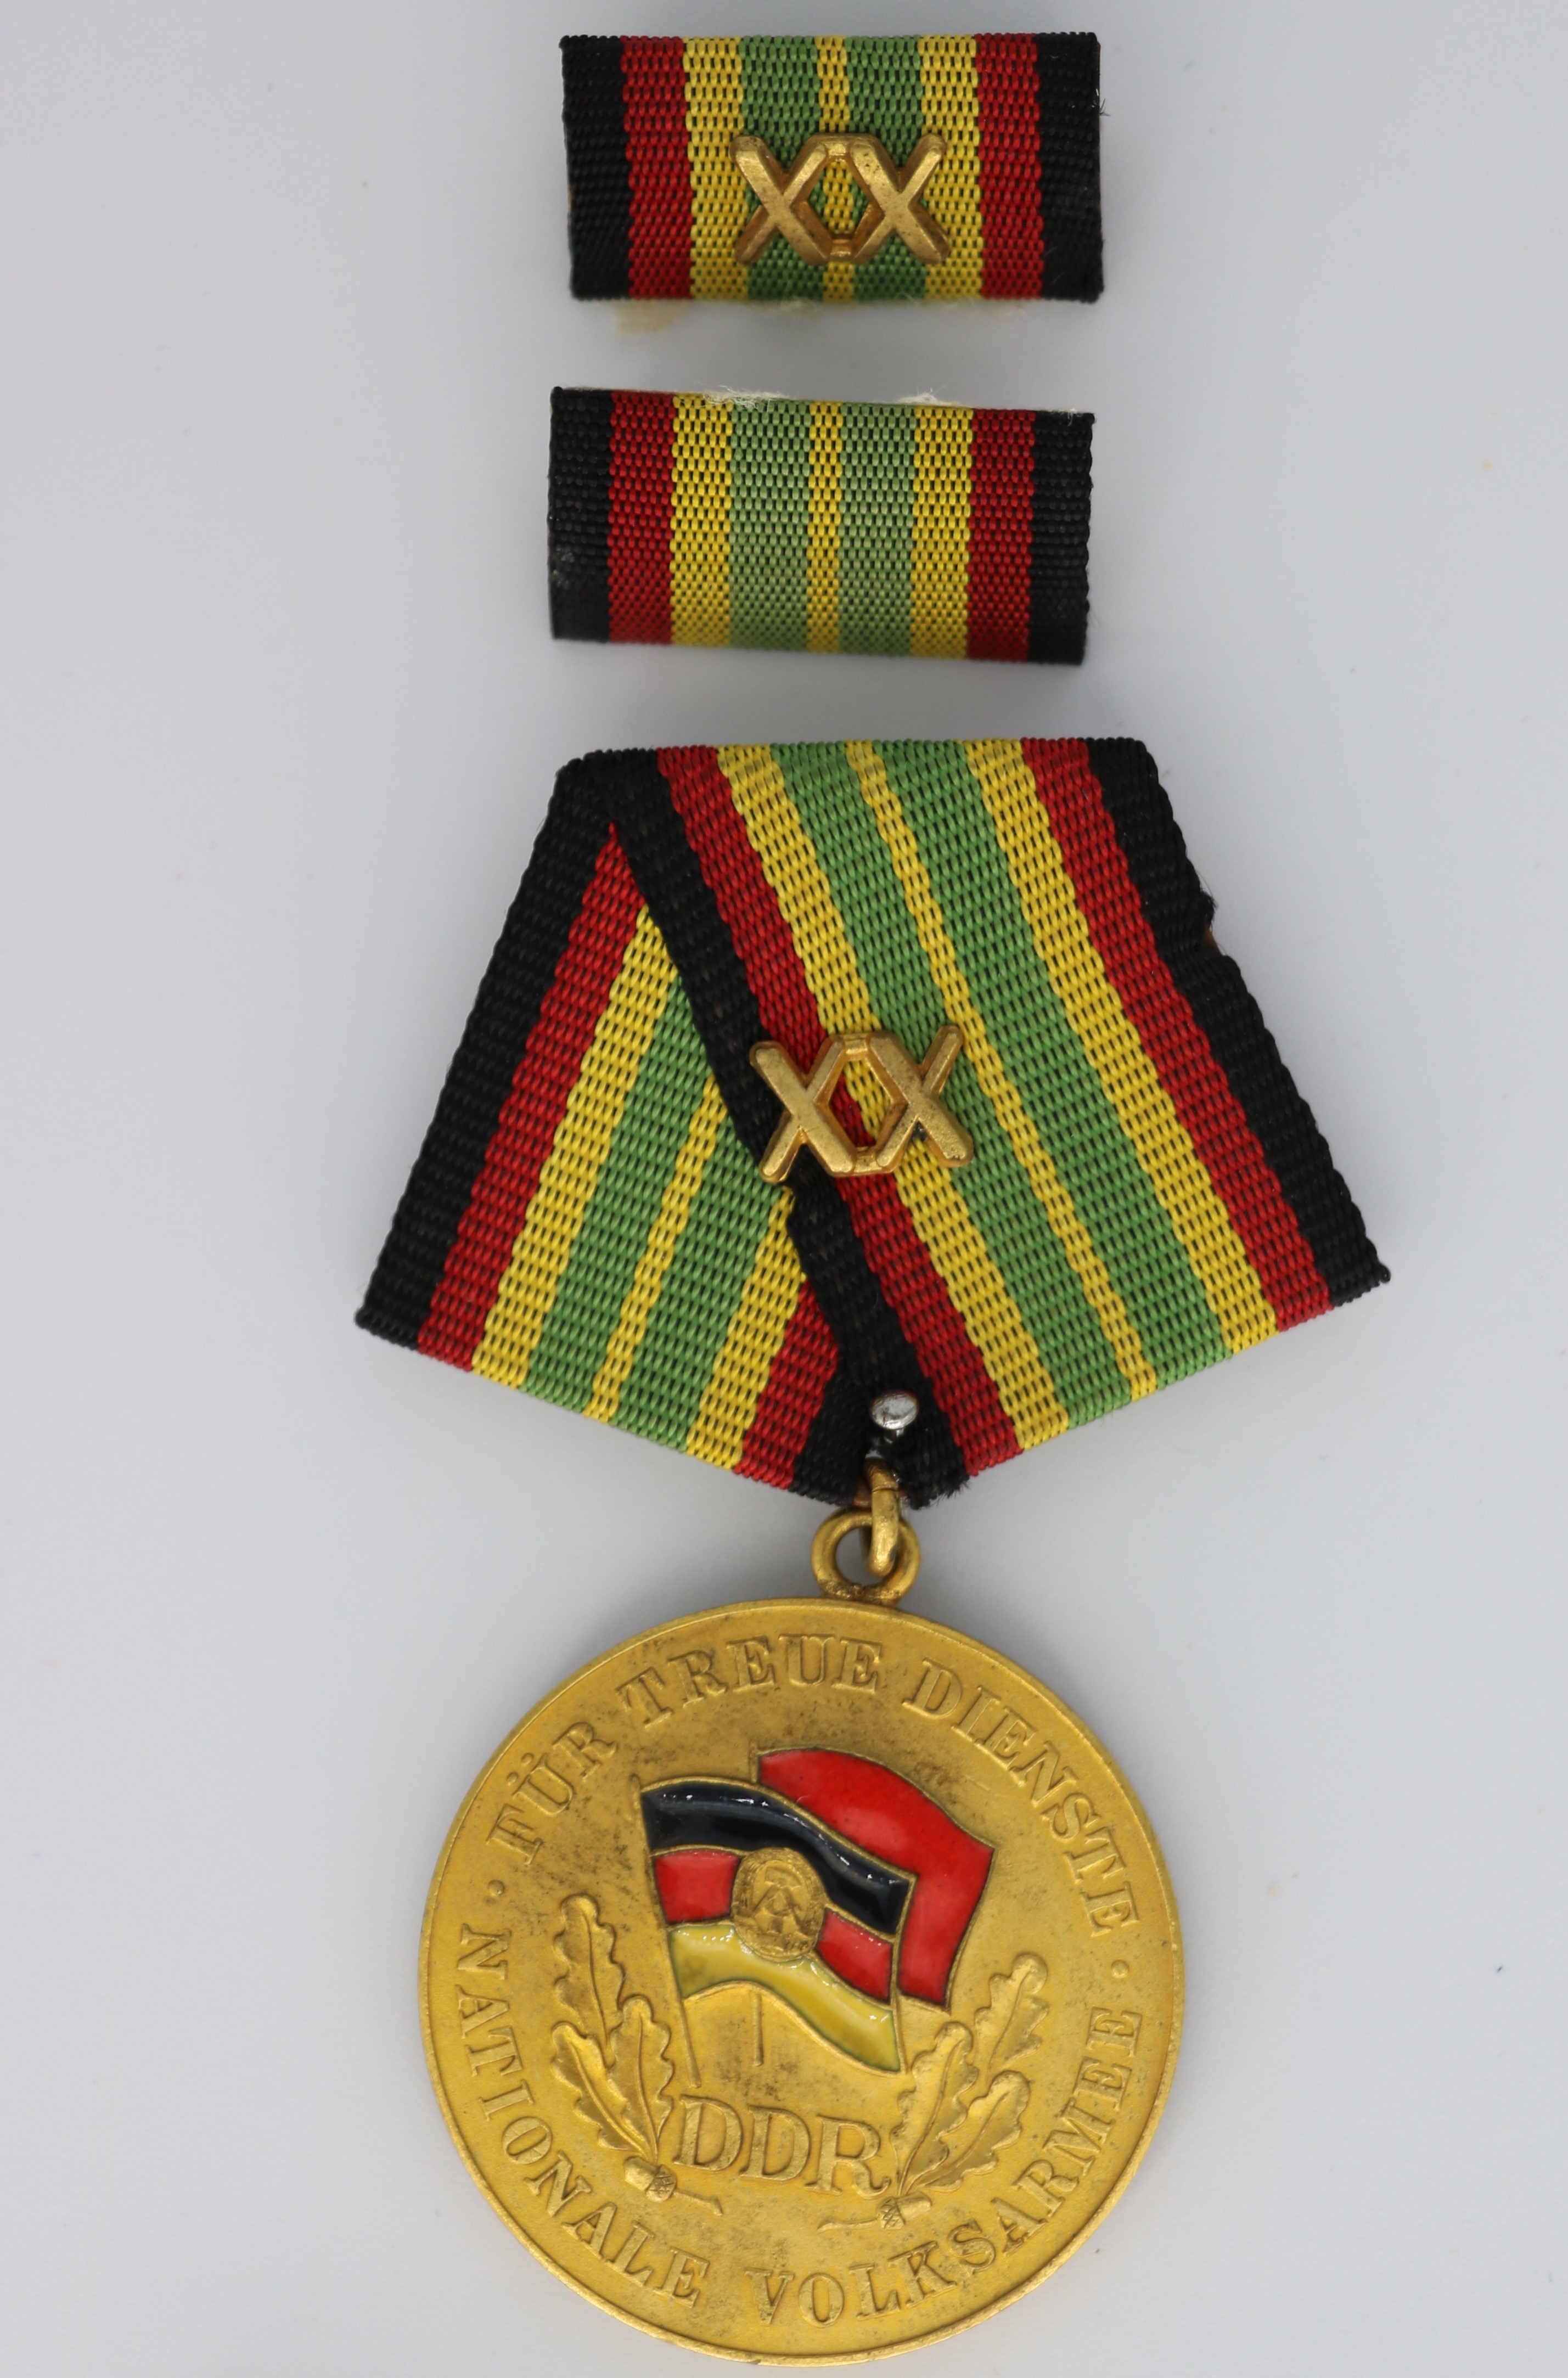 Medaille: "Für treue Dienste in der Nationalen Volksarmee" (20 Jahre) mit Interimsspange für 20 Jahre und Interimsspange für 5 Jahre (Museum Berlin-Karlshorst CC BY-NC-SA)